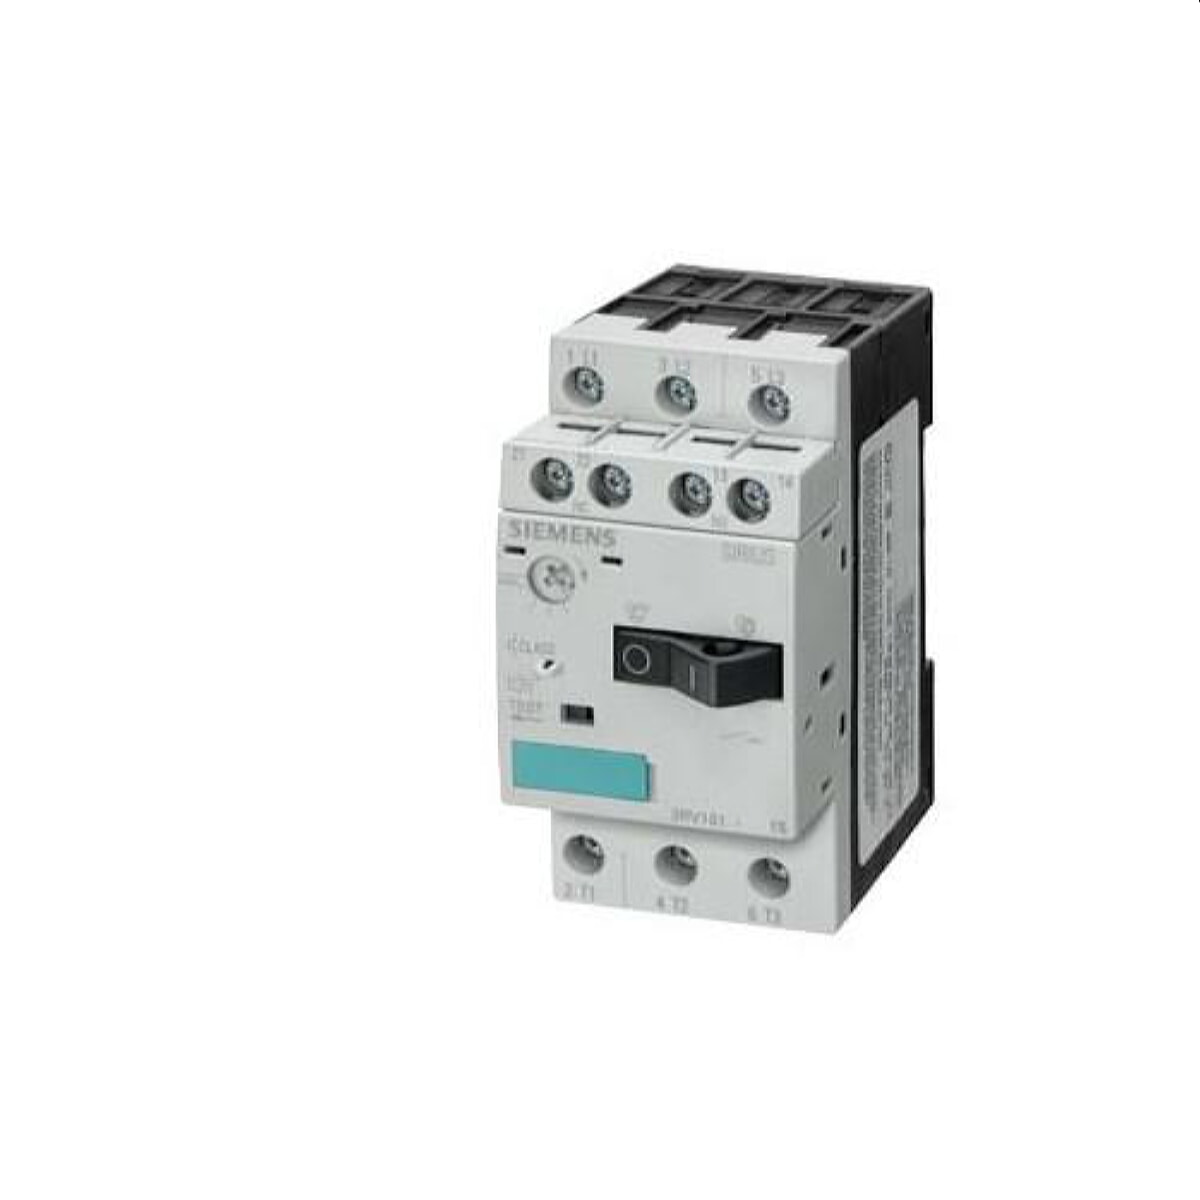 Siemens Leistungsschalter S00 0,45-0,63A 3RV1011-0GA15